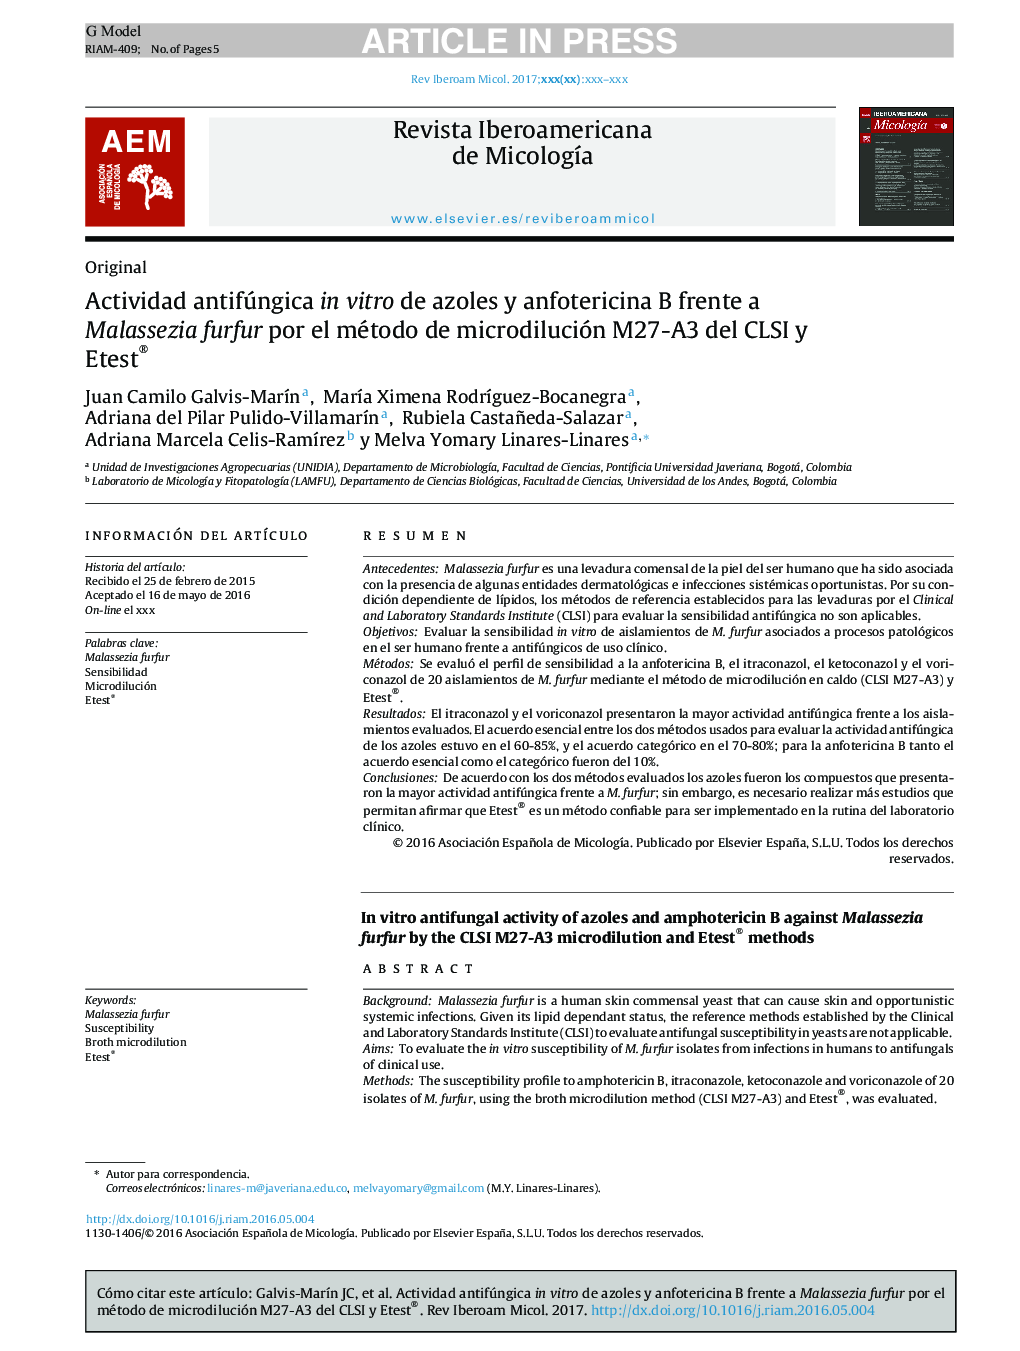 Actividad antifúngica in vitro de azoles y anfotericina B frente a Malassezia furfur por el método de microdilución M27-A3 del CLSI y Etest®